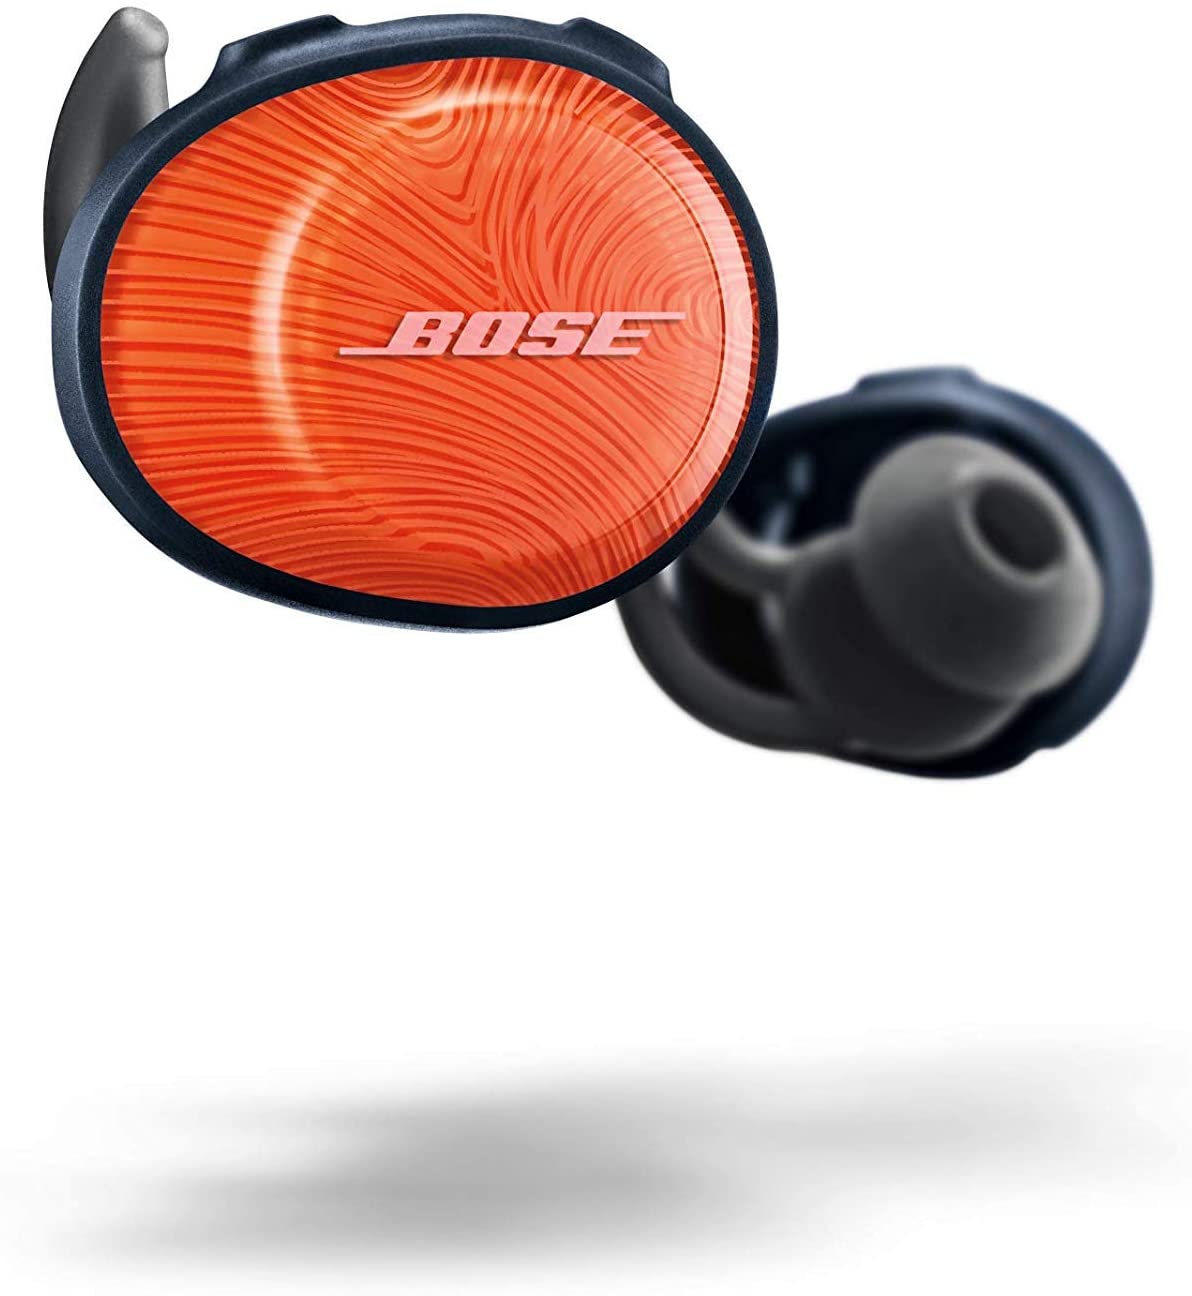 Bose SoundSport Free wireless in-earbuds